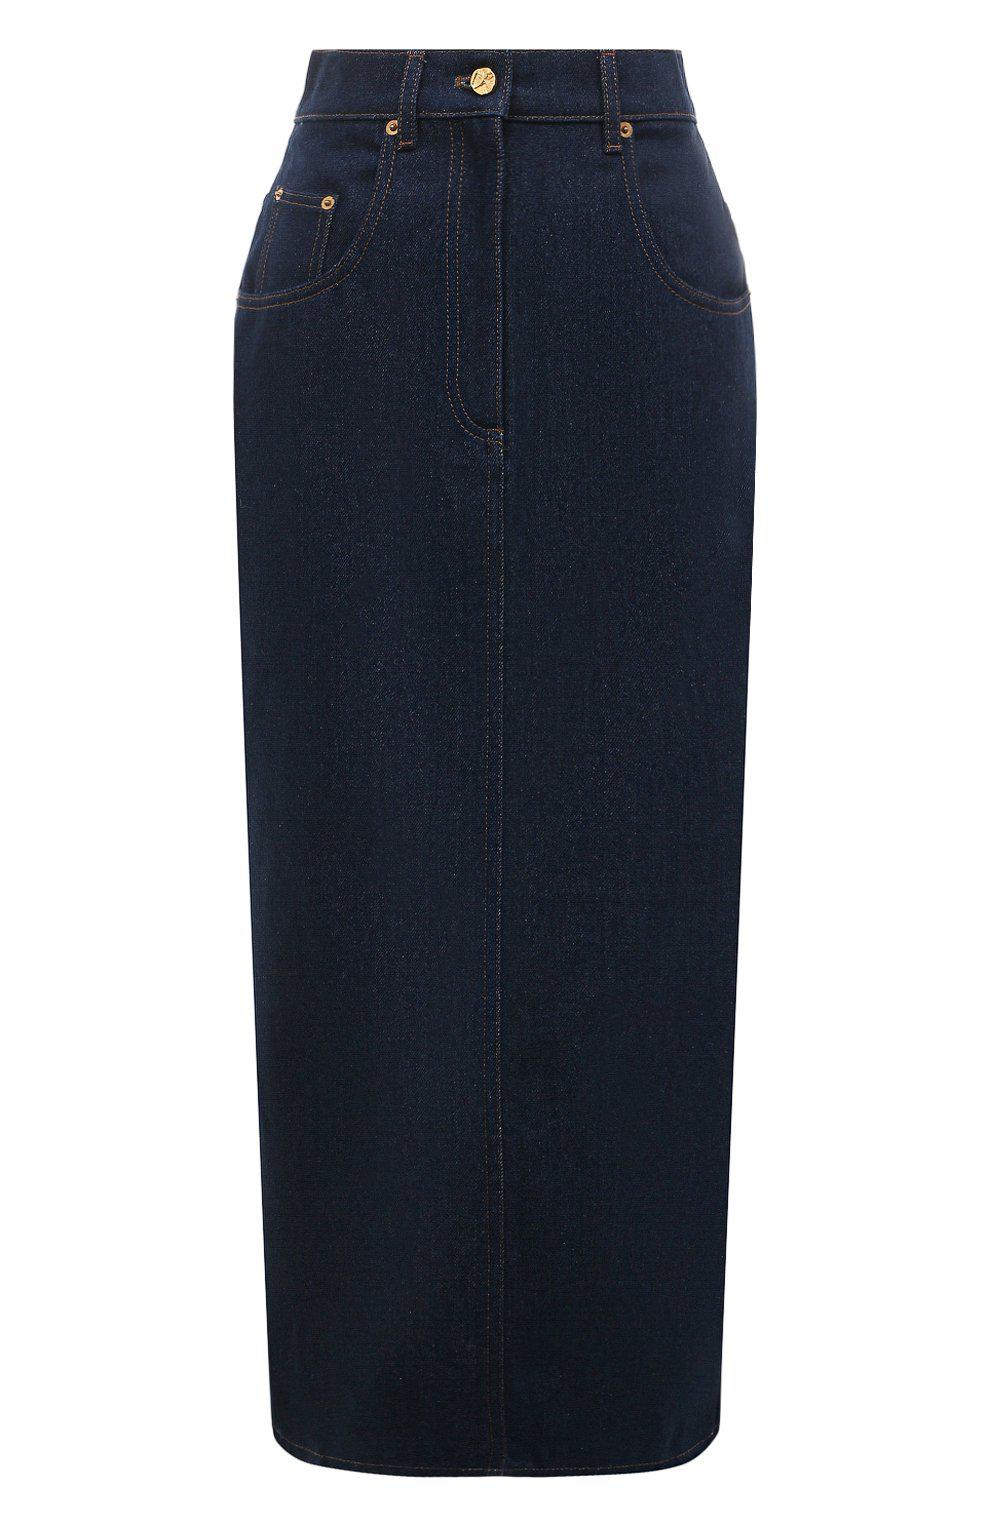 Джинсовая юбка, Nina Ricci, 61 400 руб.